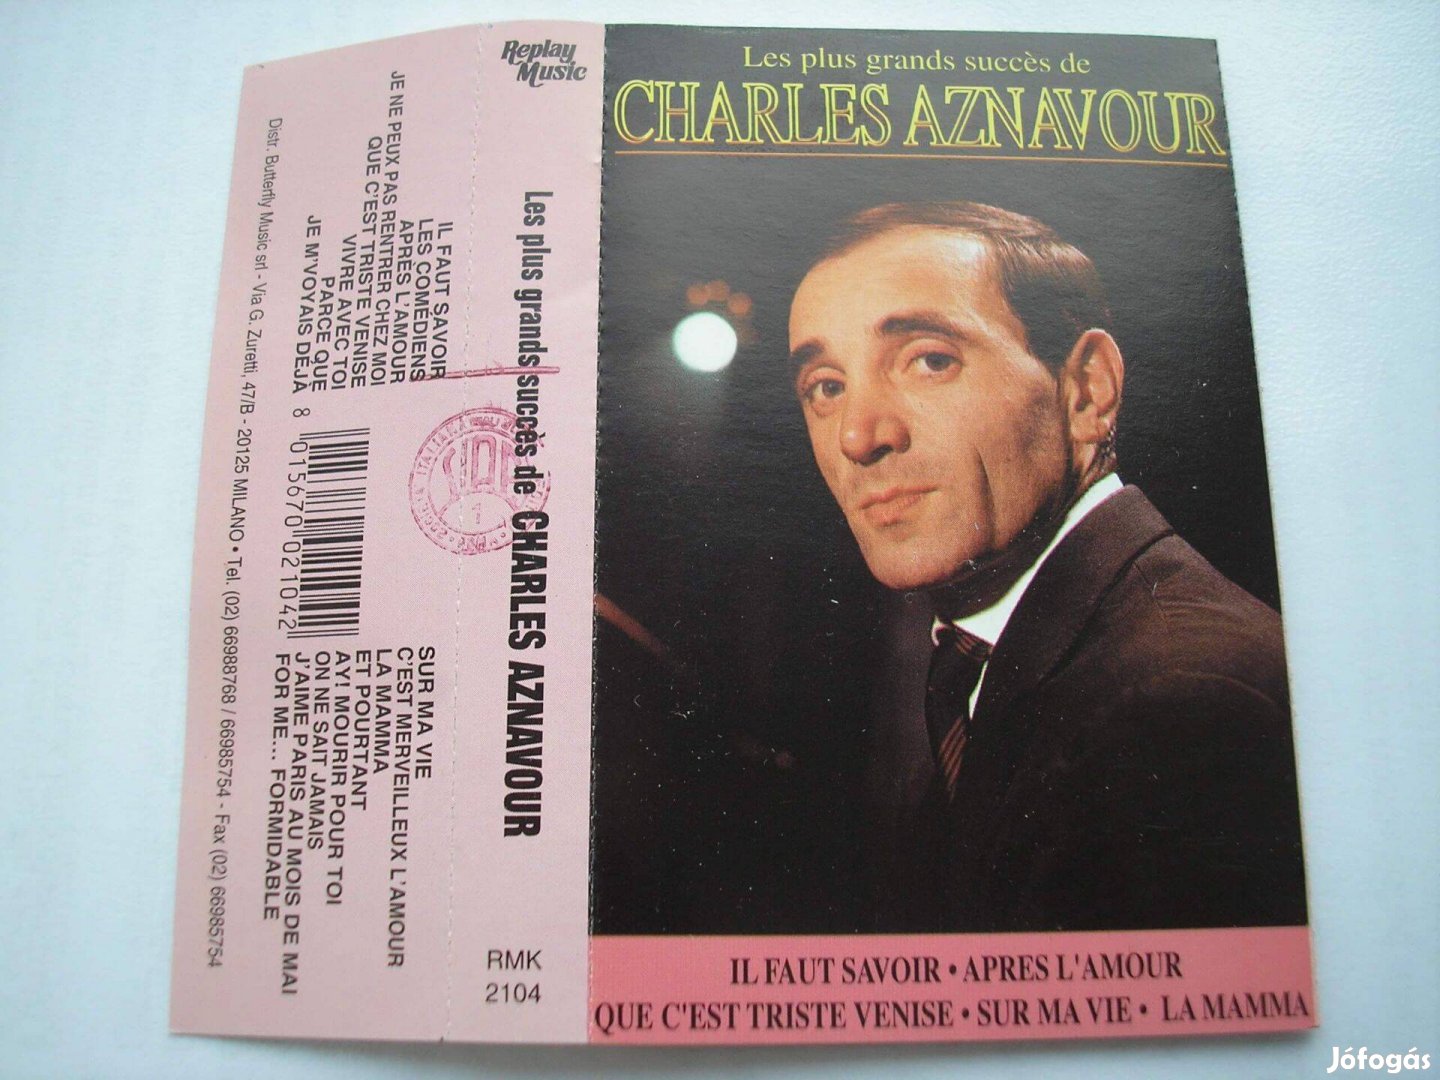 Charles Aznavour - A legnagyobb sikerek , gyári műsoros